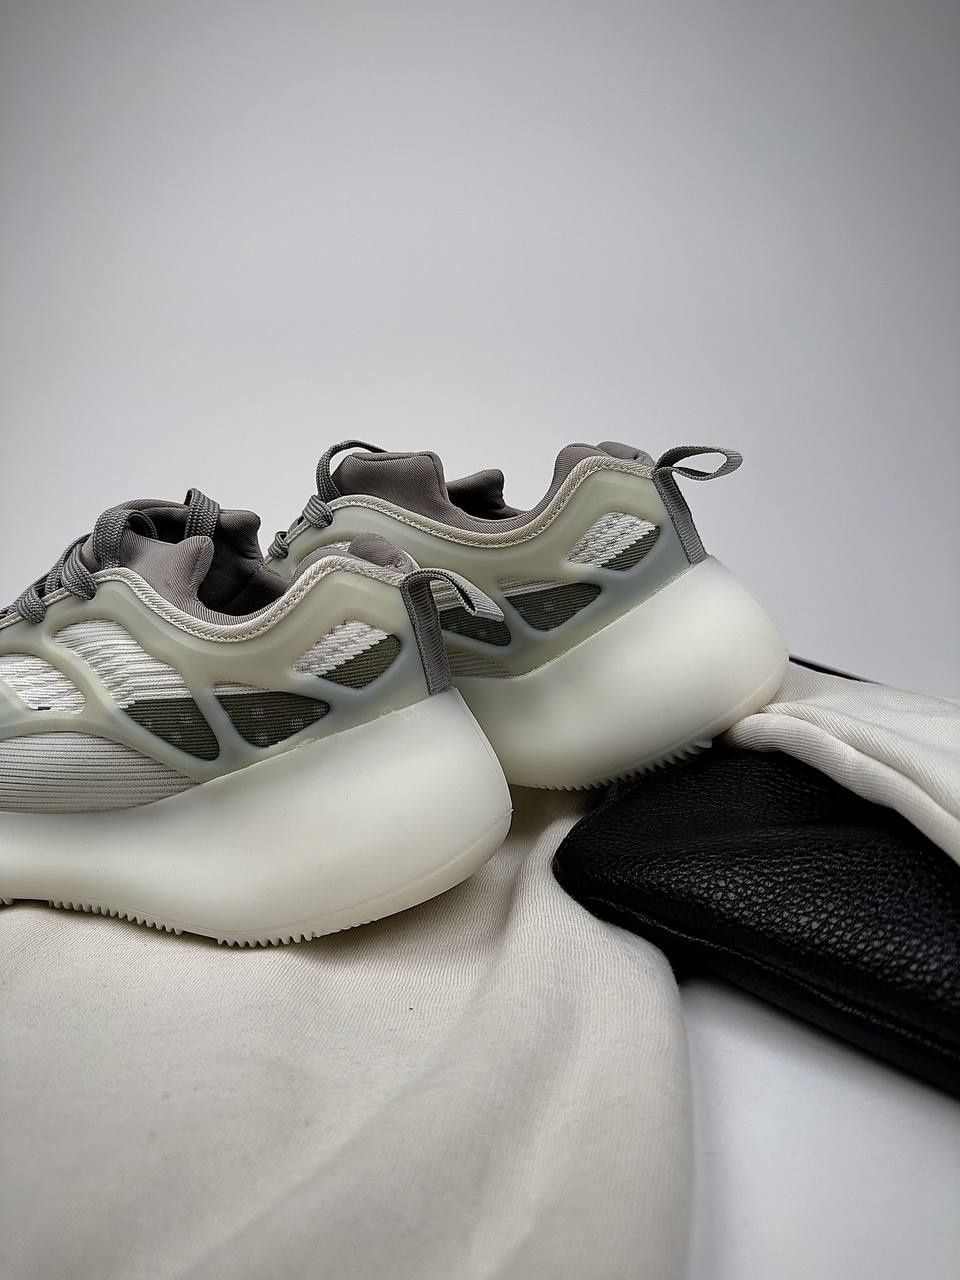 Кросівки чоловічі Adidas Yeezy Білі
Ціна - 1350
• Се